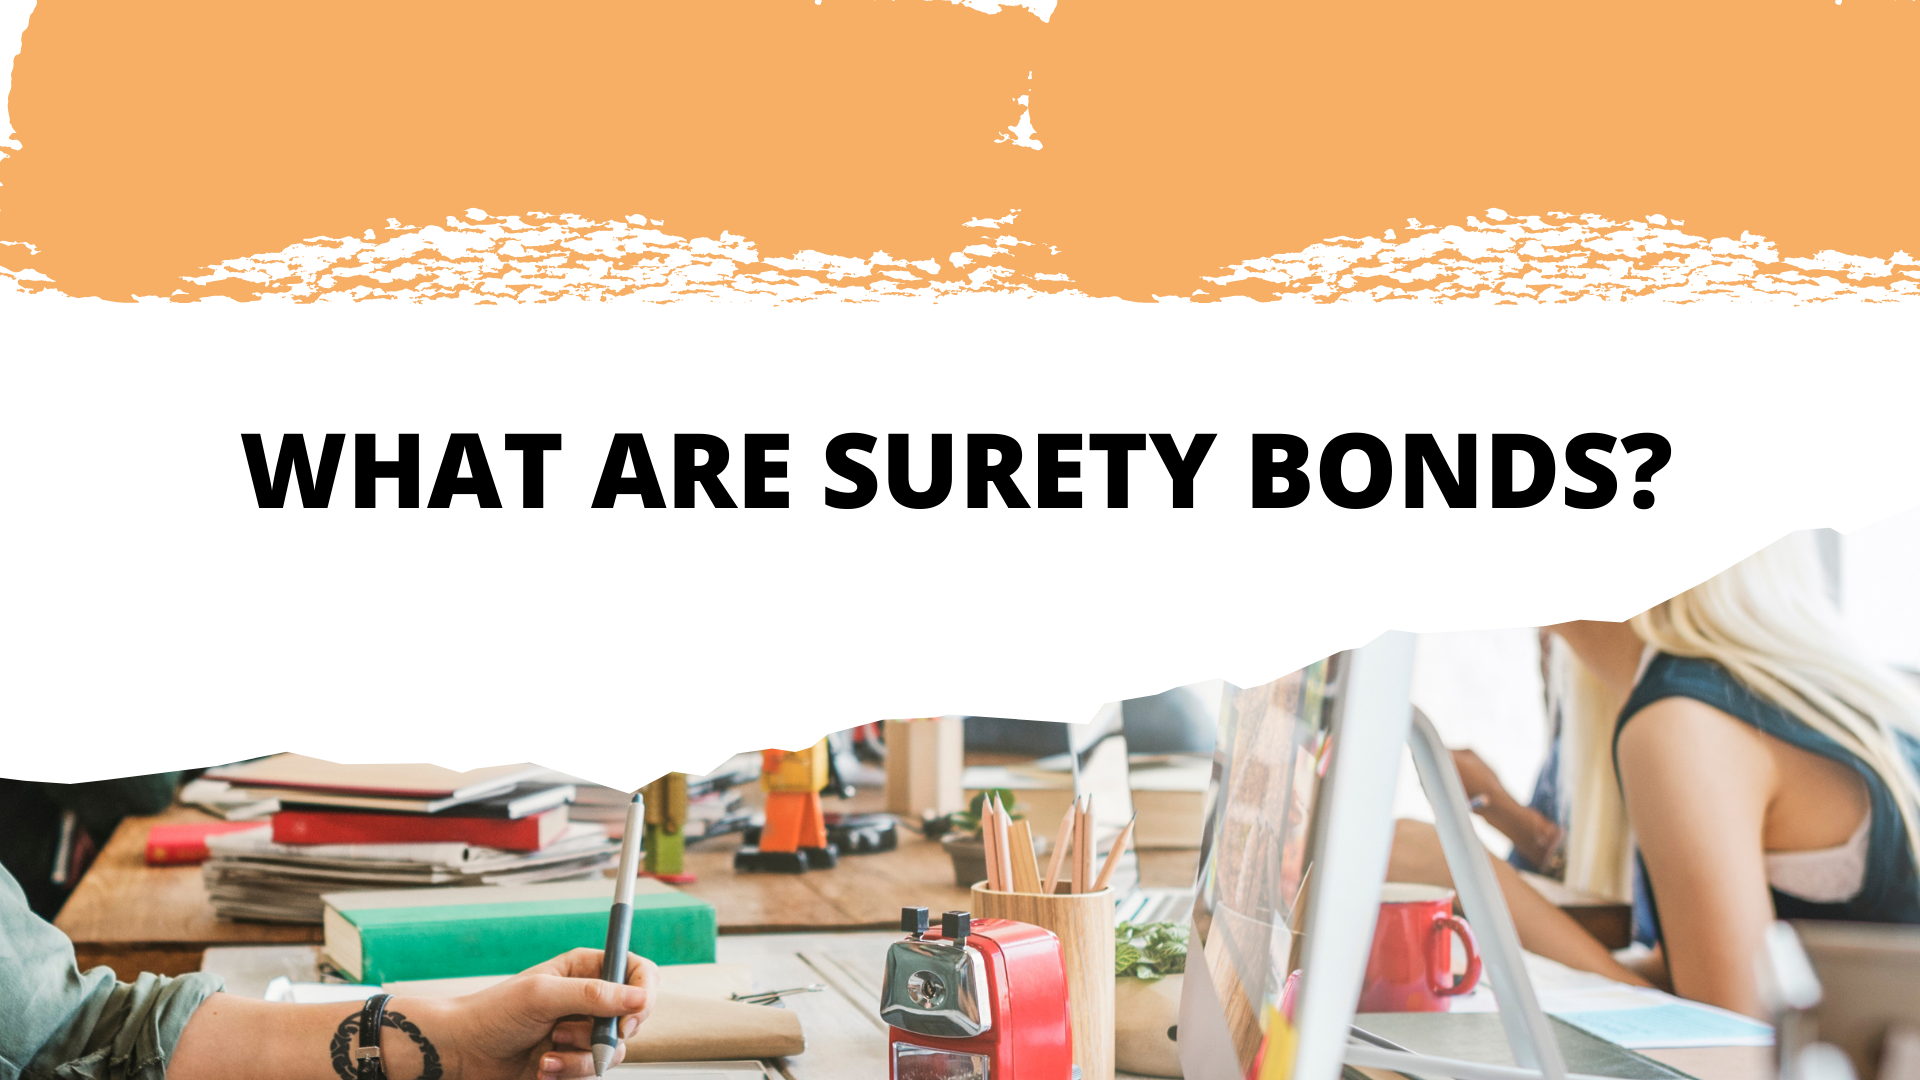 surety bond - How to define surety bonds - workspace